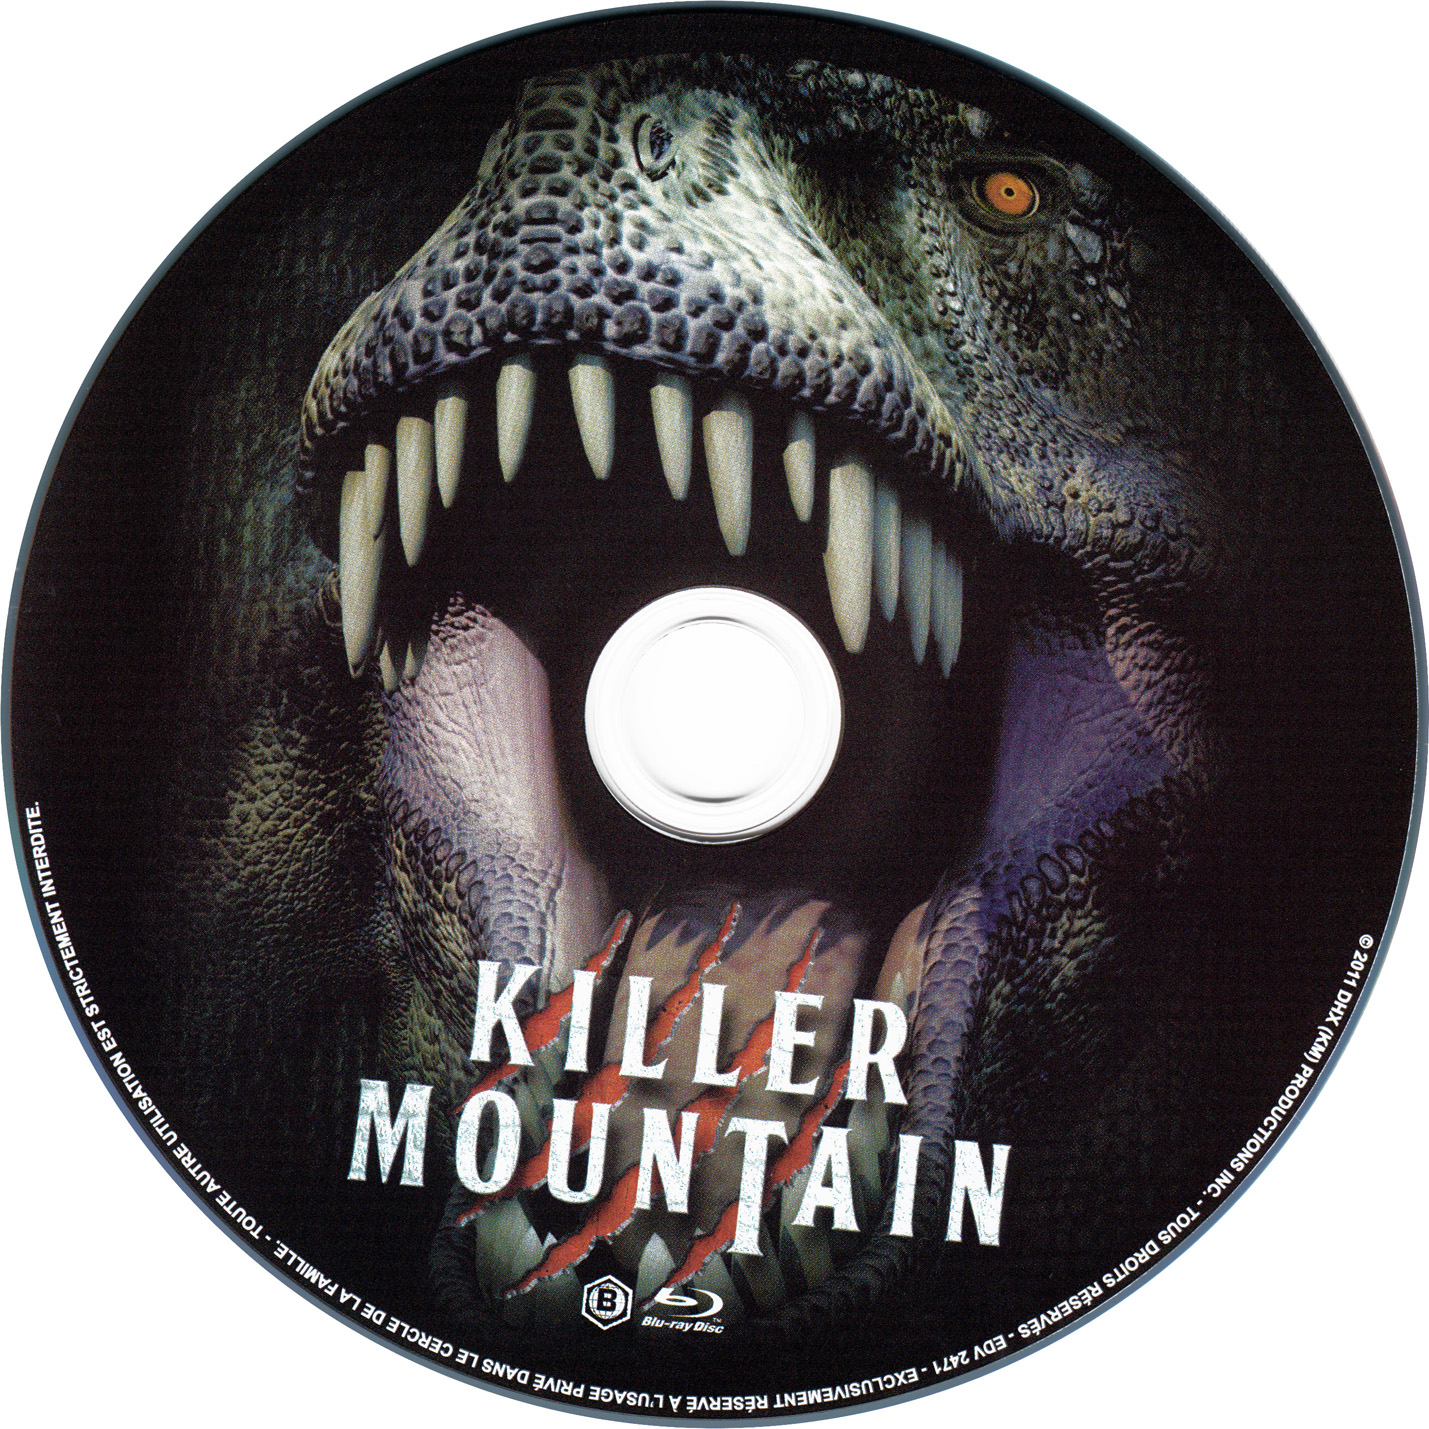 Killer mountain (BLU-RAY)